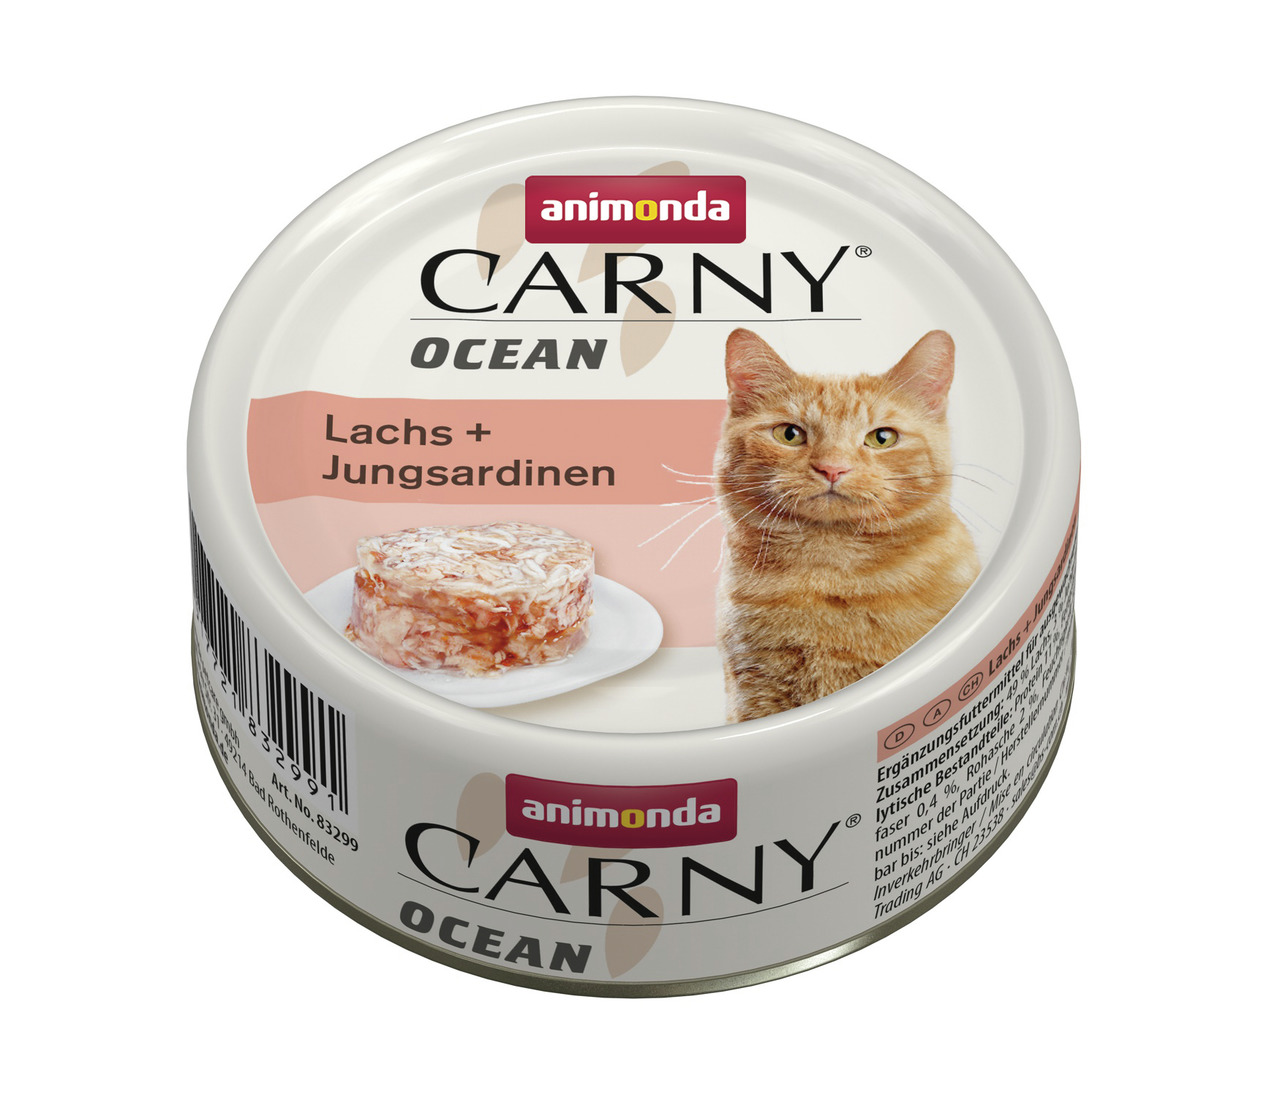 Animonda Carny Ocean Lachs + Jungsardinen Katzen Nassfutter 80 g